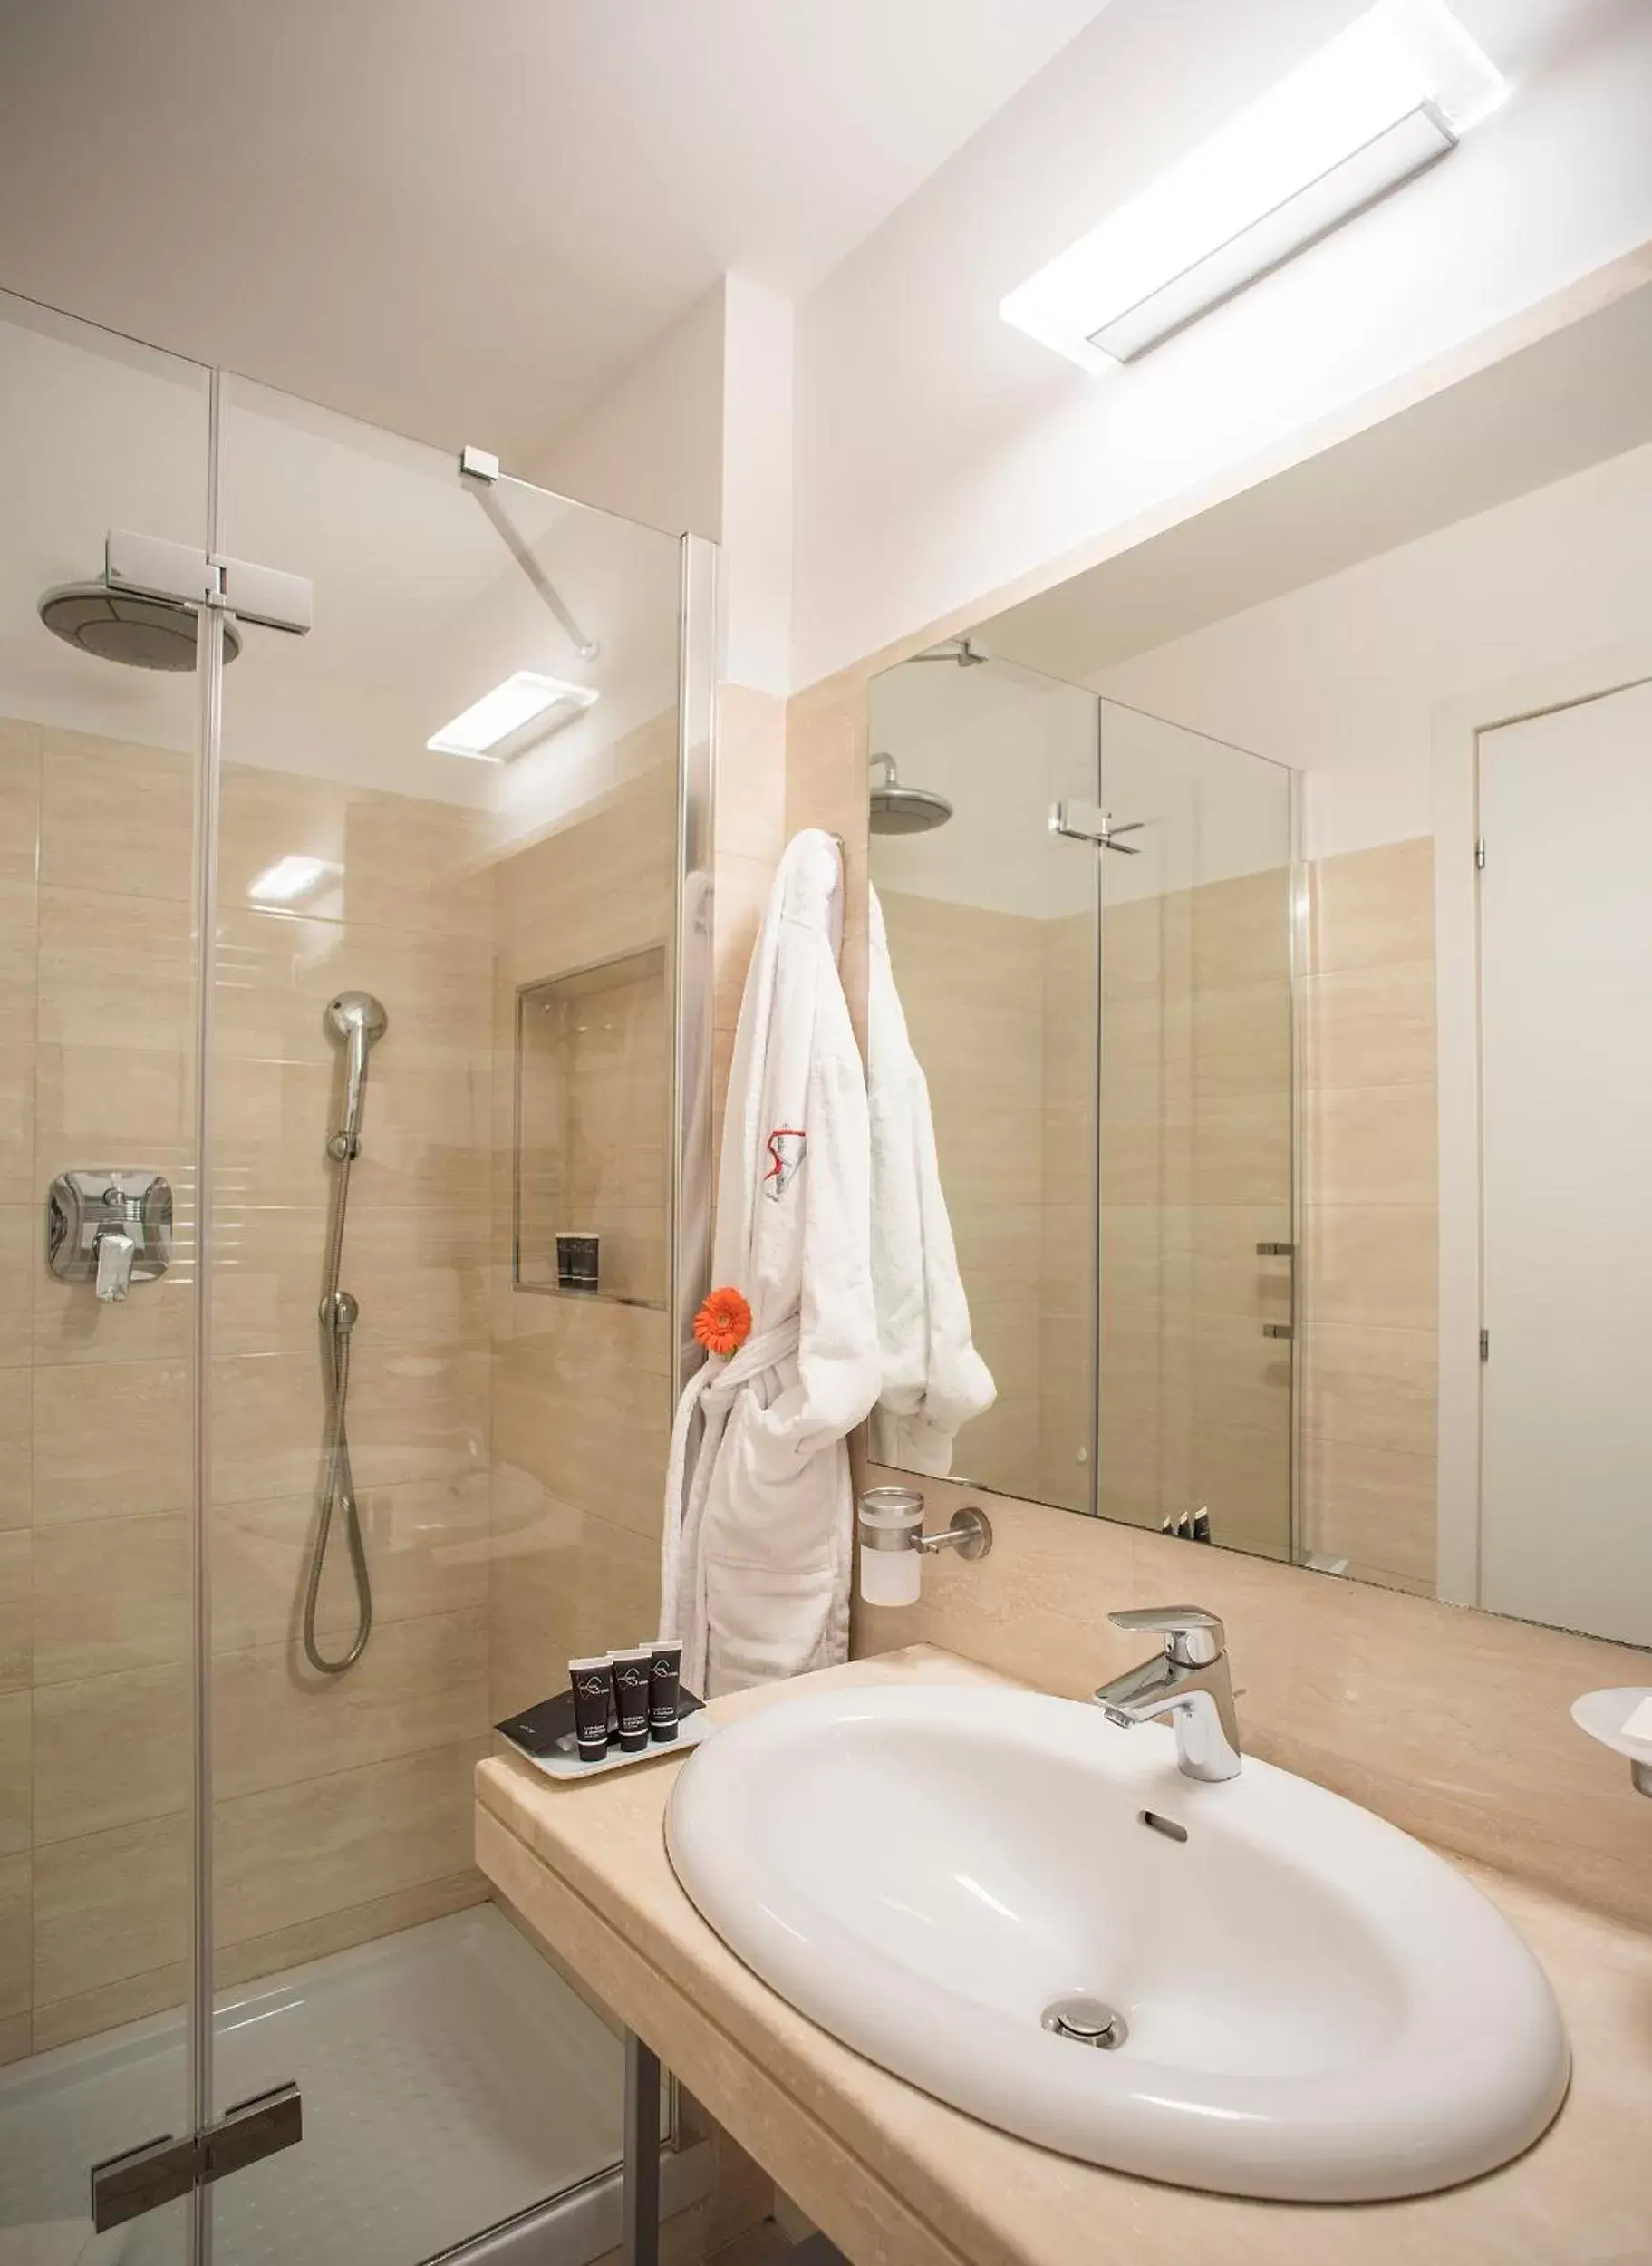 Shower, Bathroom in Rome Art Hotel - Gruppo Trevi Hotels